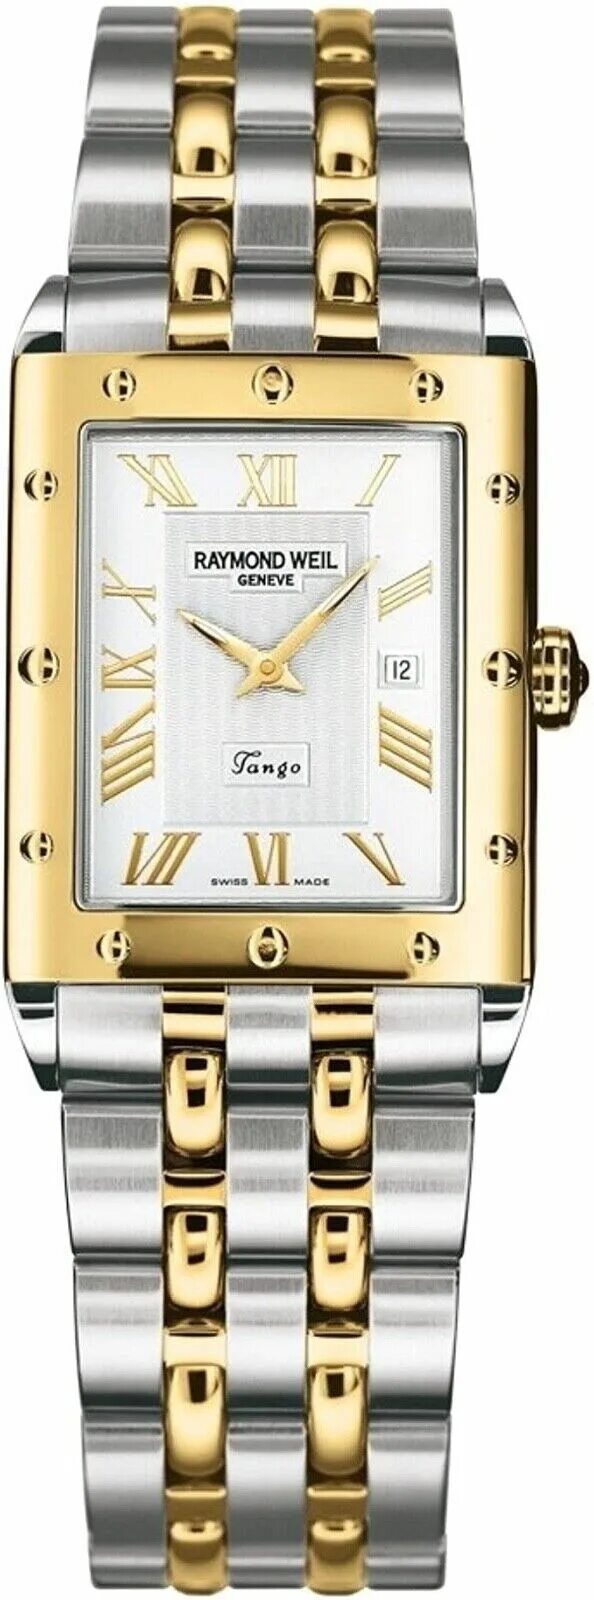 Raymond weil мужские часы. Raymond Weil Tango 5381. Часы Reymond Weil Tango. Raymond Weil Tango 300m. Часы мужские Raymond Weil Tango.